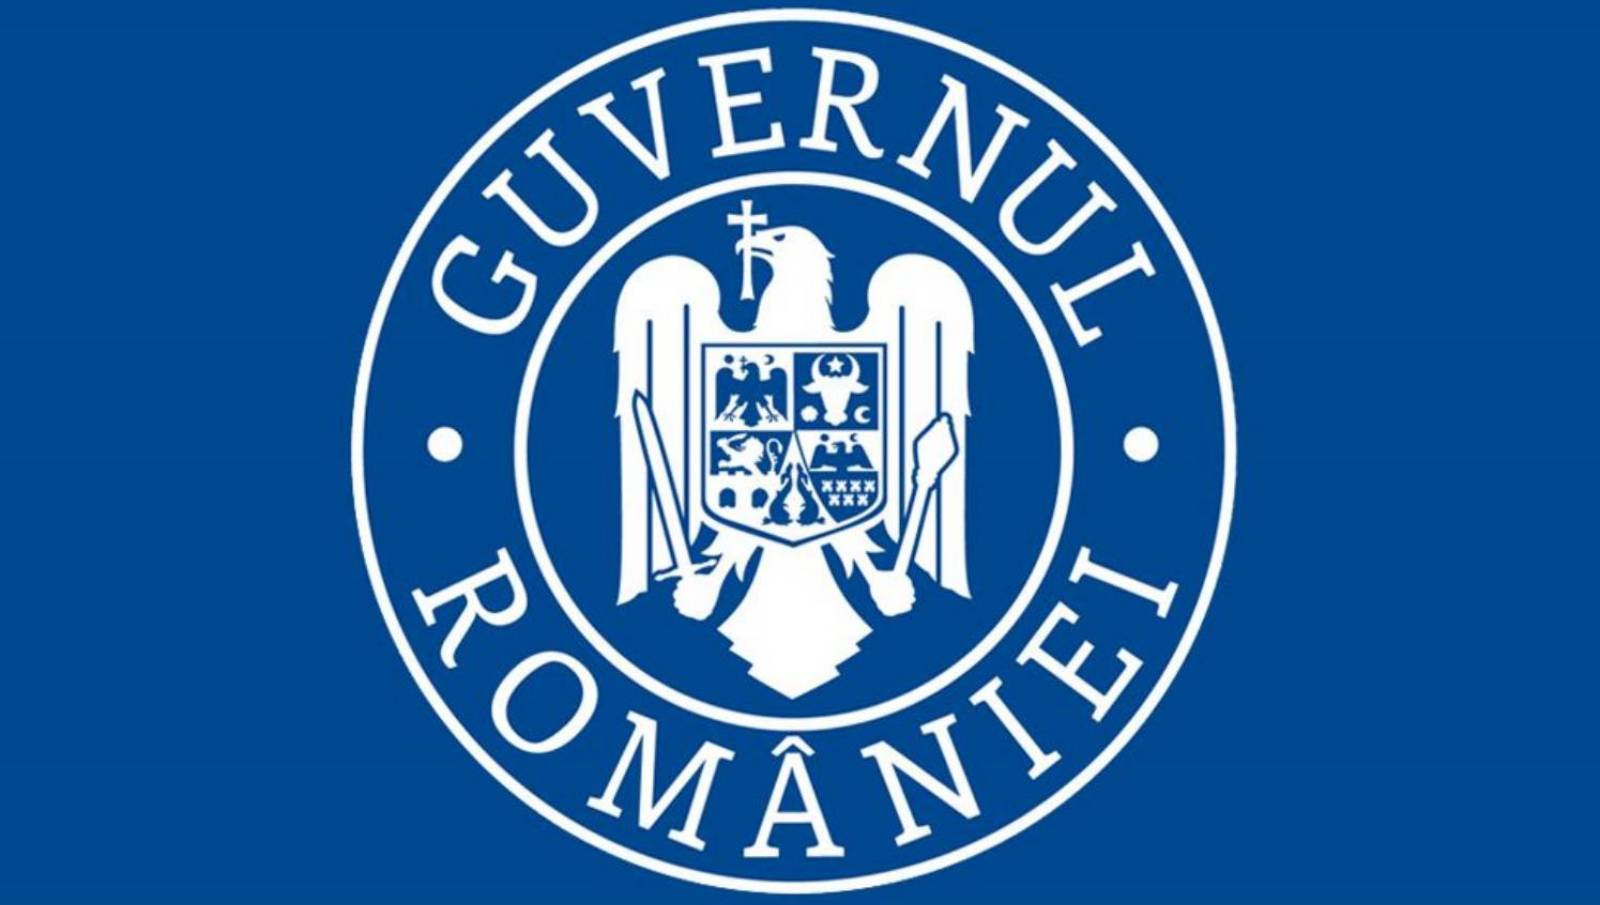 Die rumänische Regierung spielt ein rotes Drehbuch